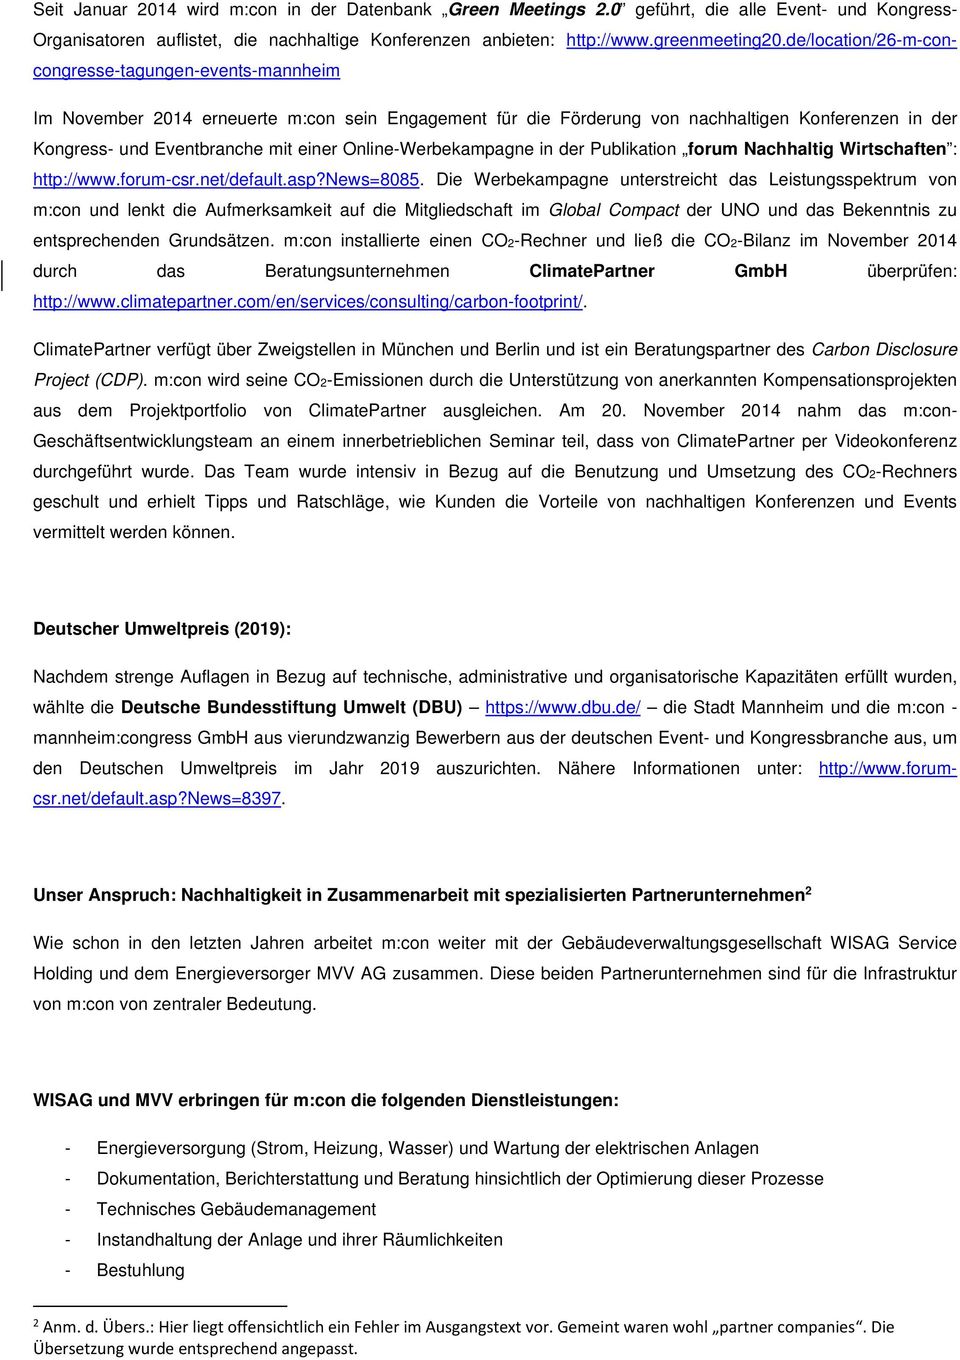 Online-Werbekampagne in der Publikation forum Nachhaltig Wirtschaften : http://www.forum-csr.net/default.asp?news=8085.